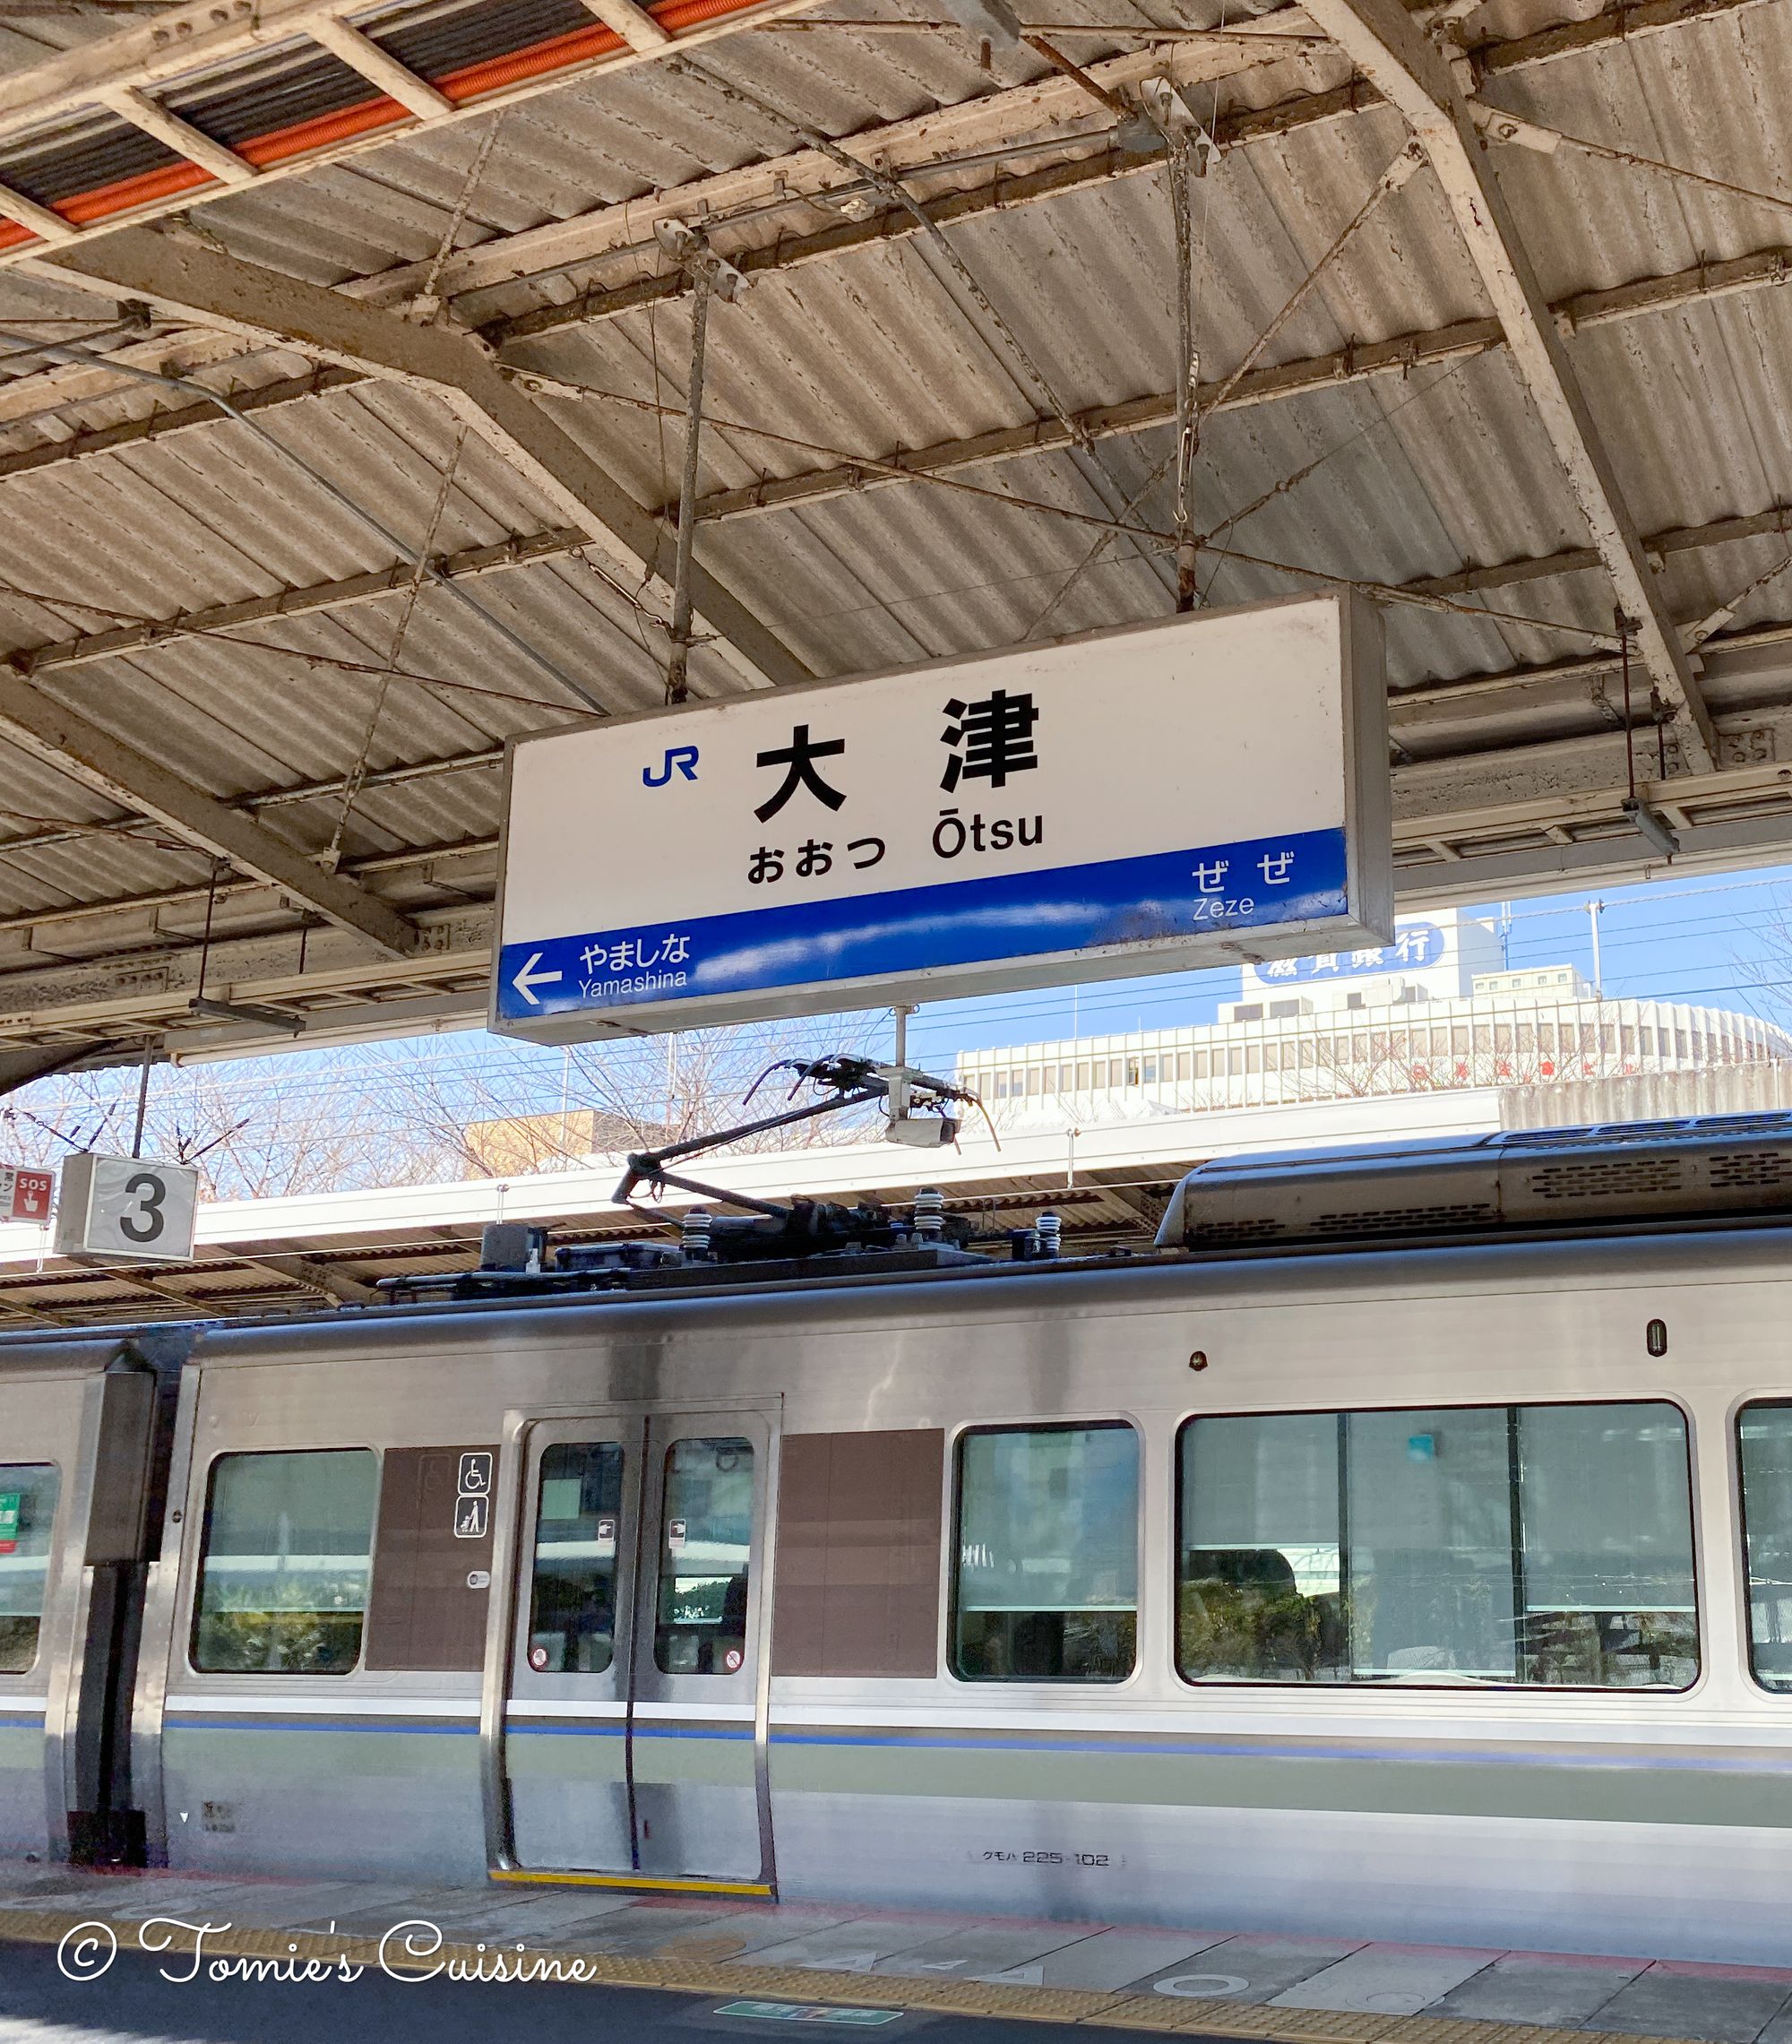 Otsu station